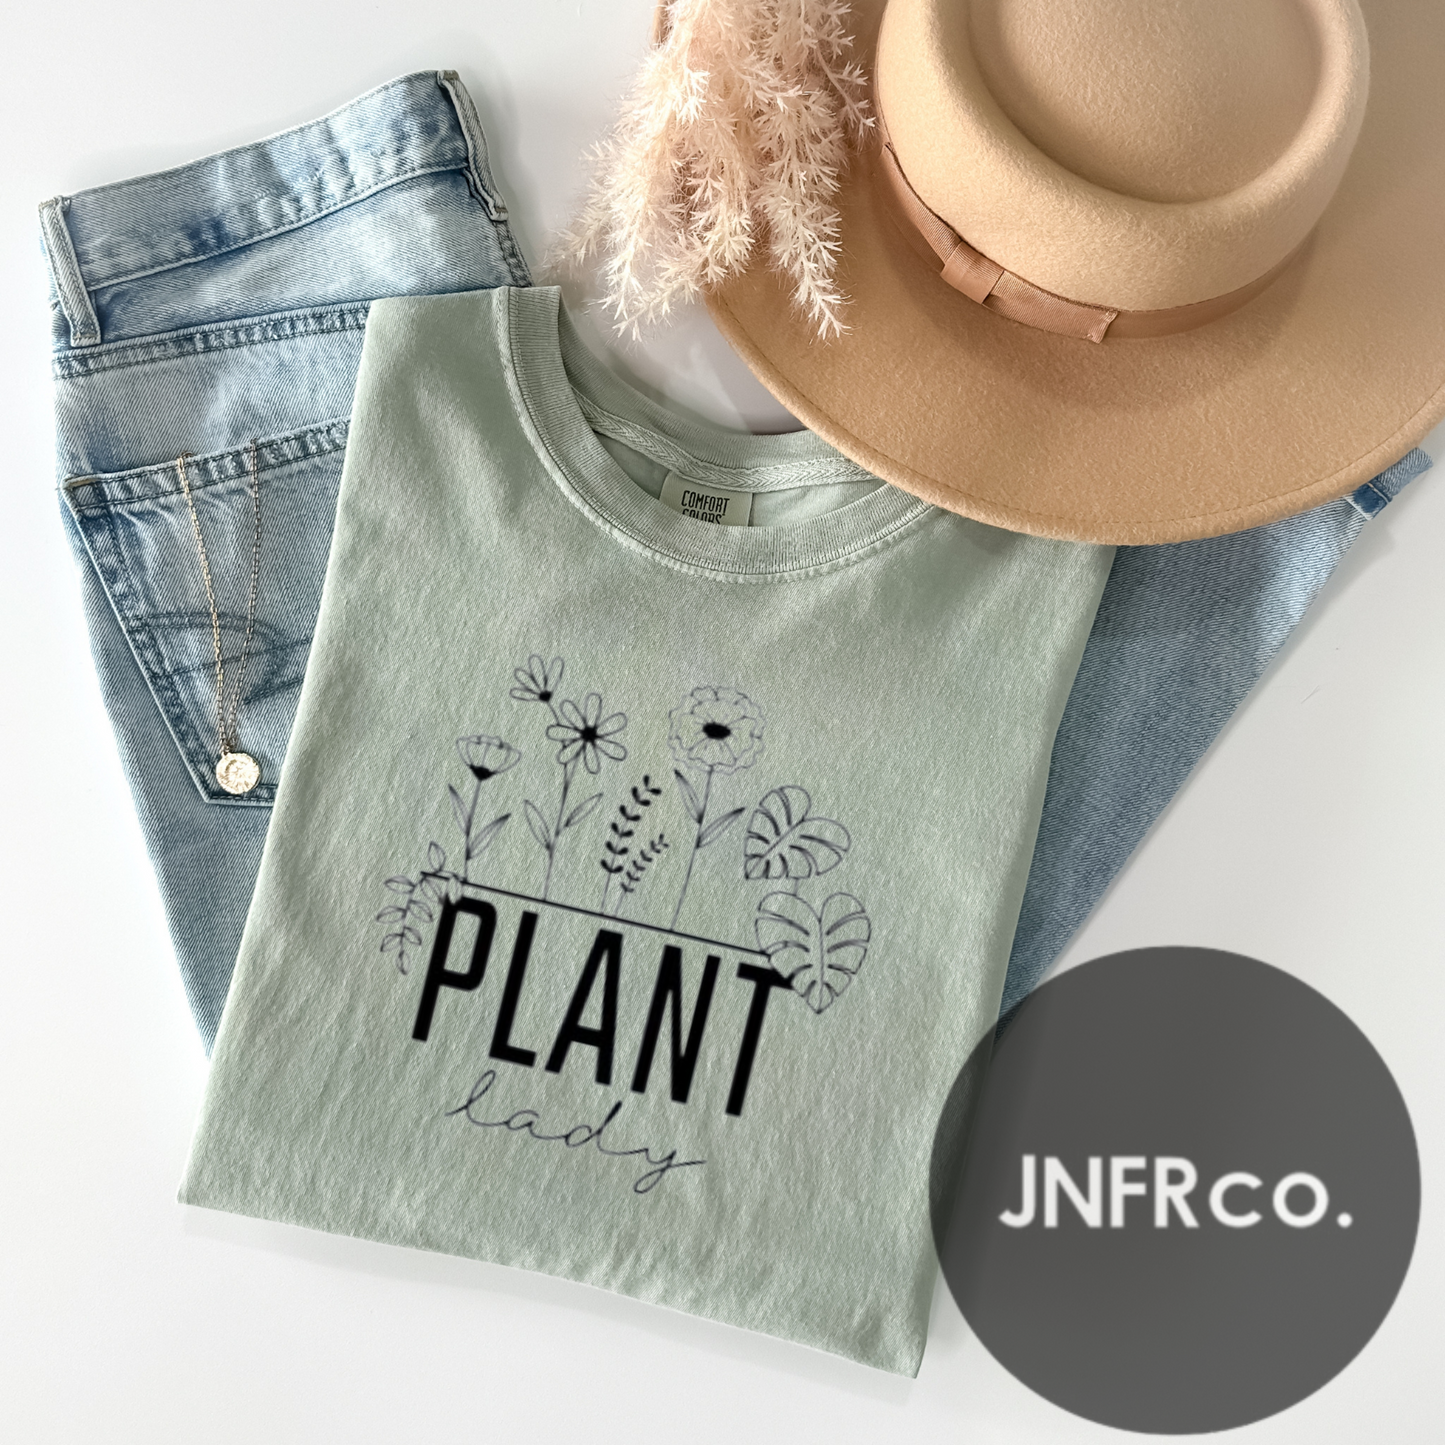 Plant Lady Comfort Colors T-Shirt